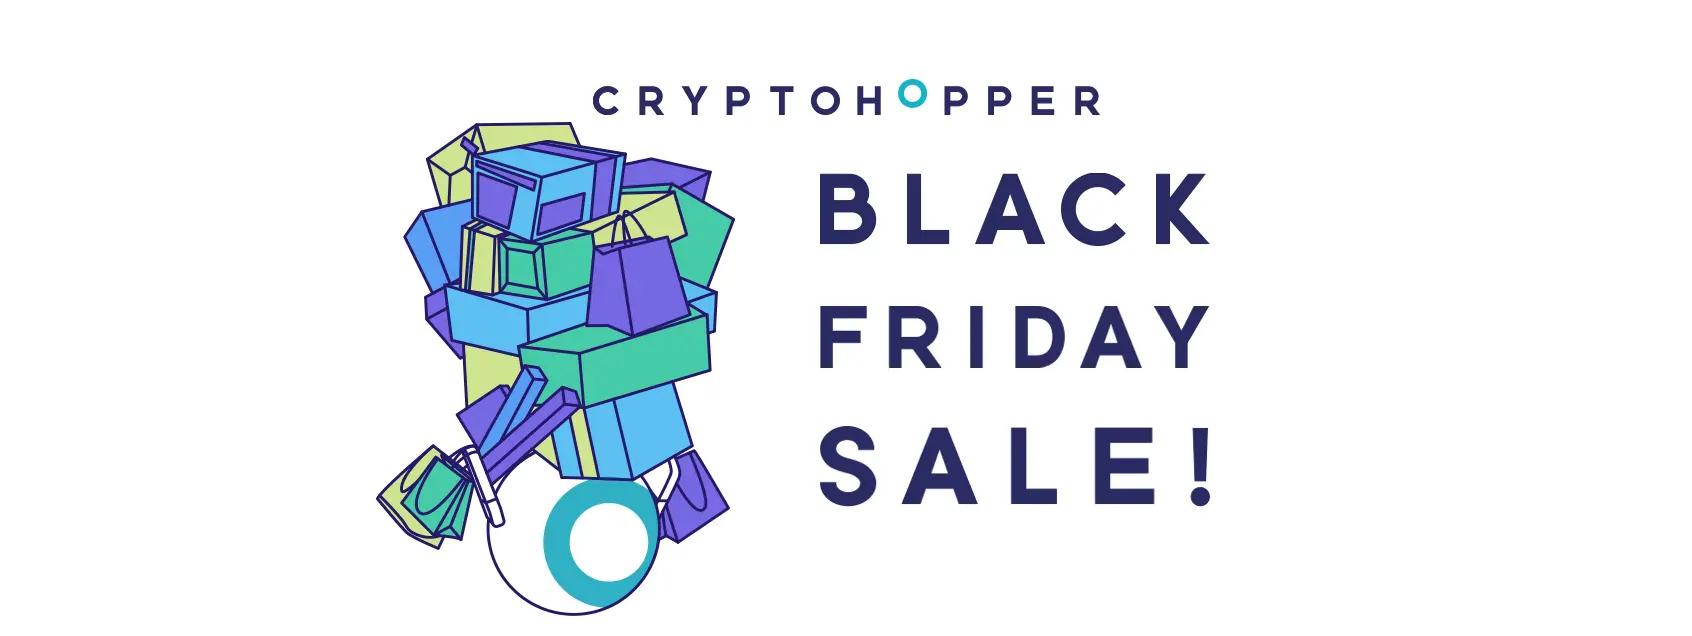 Cryptohopper celebrates Black Friday!